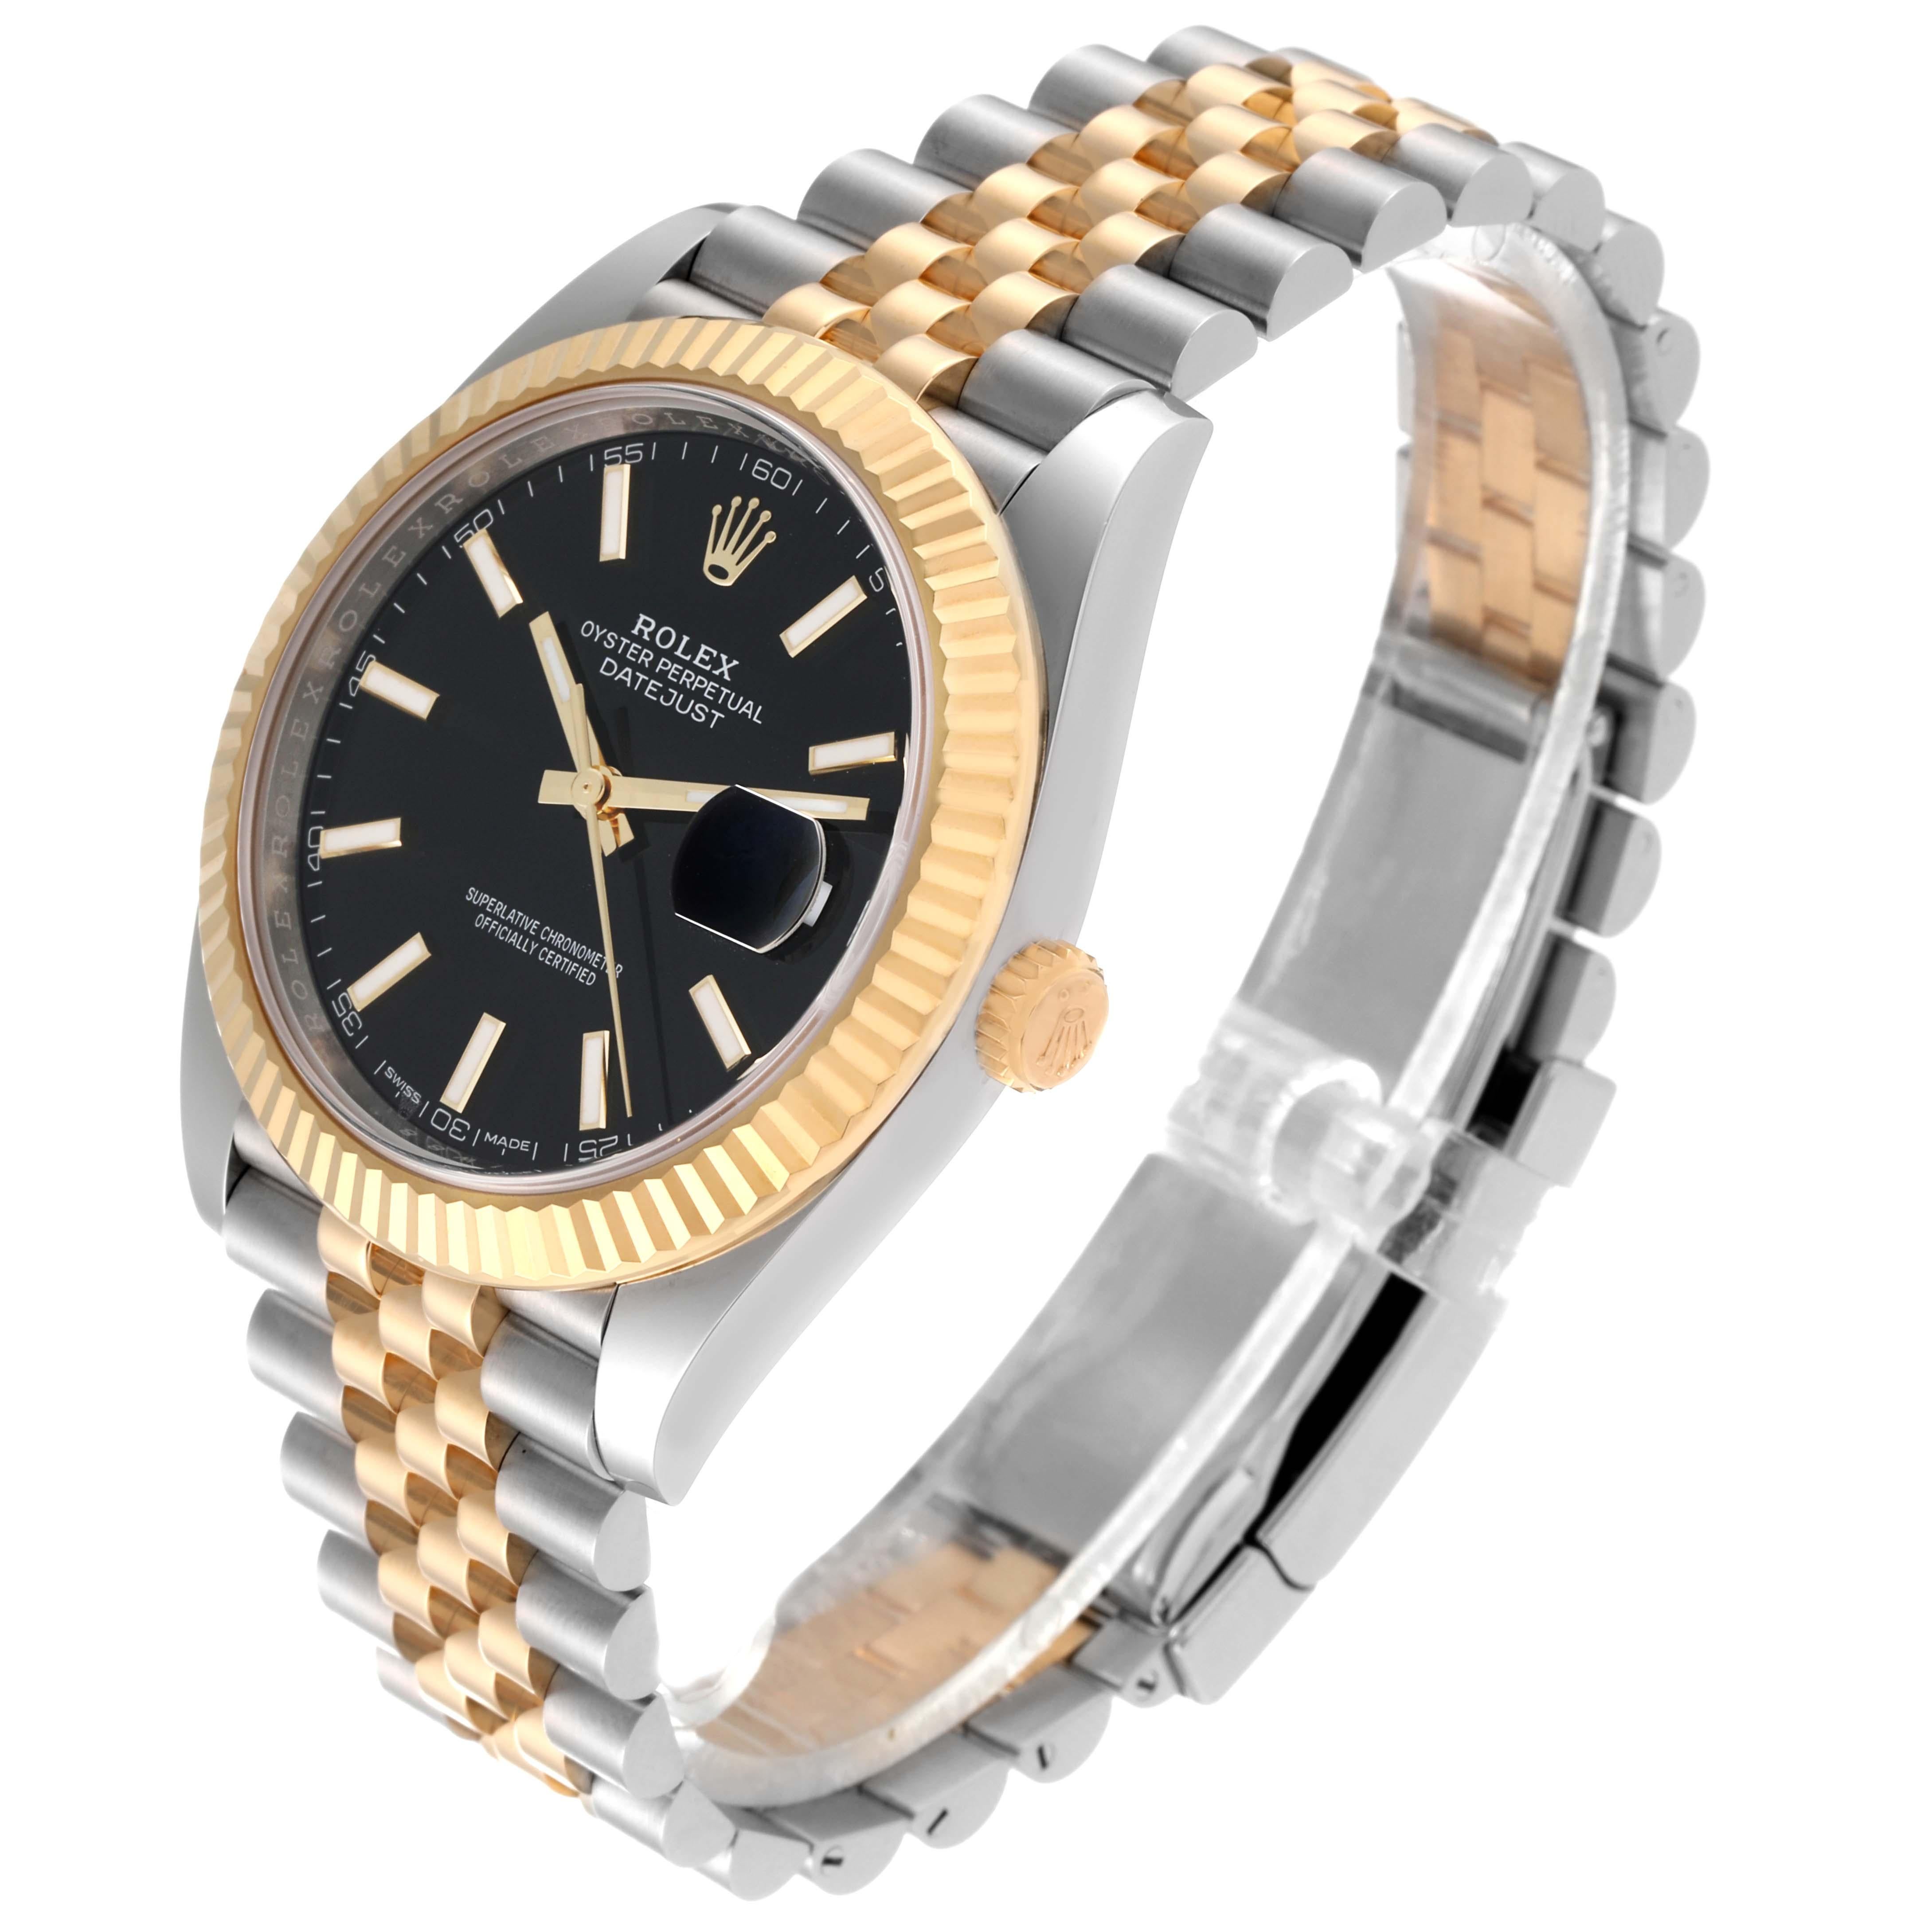 Rolex Datejust 41 Steel Yellow Gold Black Dial Mens Watch 126333 Box Card. Mouvement automatique à remontage automatique, certifié officiellement chronomètre, avec date à réglage rapide. Boîtier en acier inoxydable et en or jaune 18K de 41 mm de